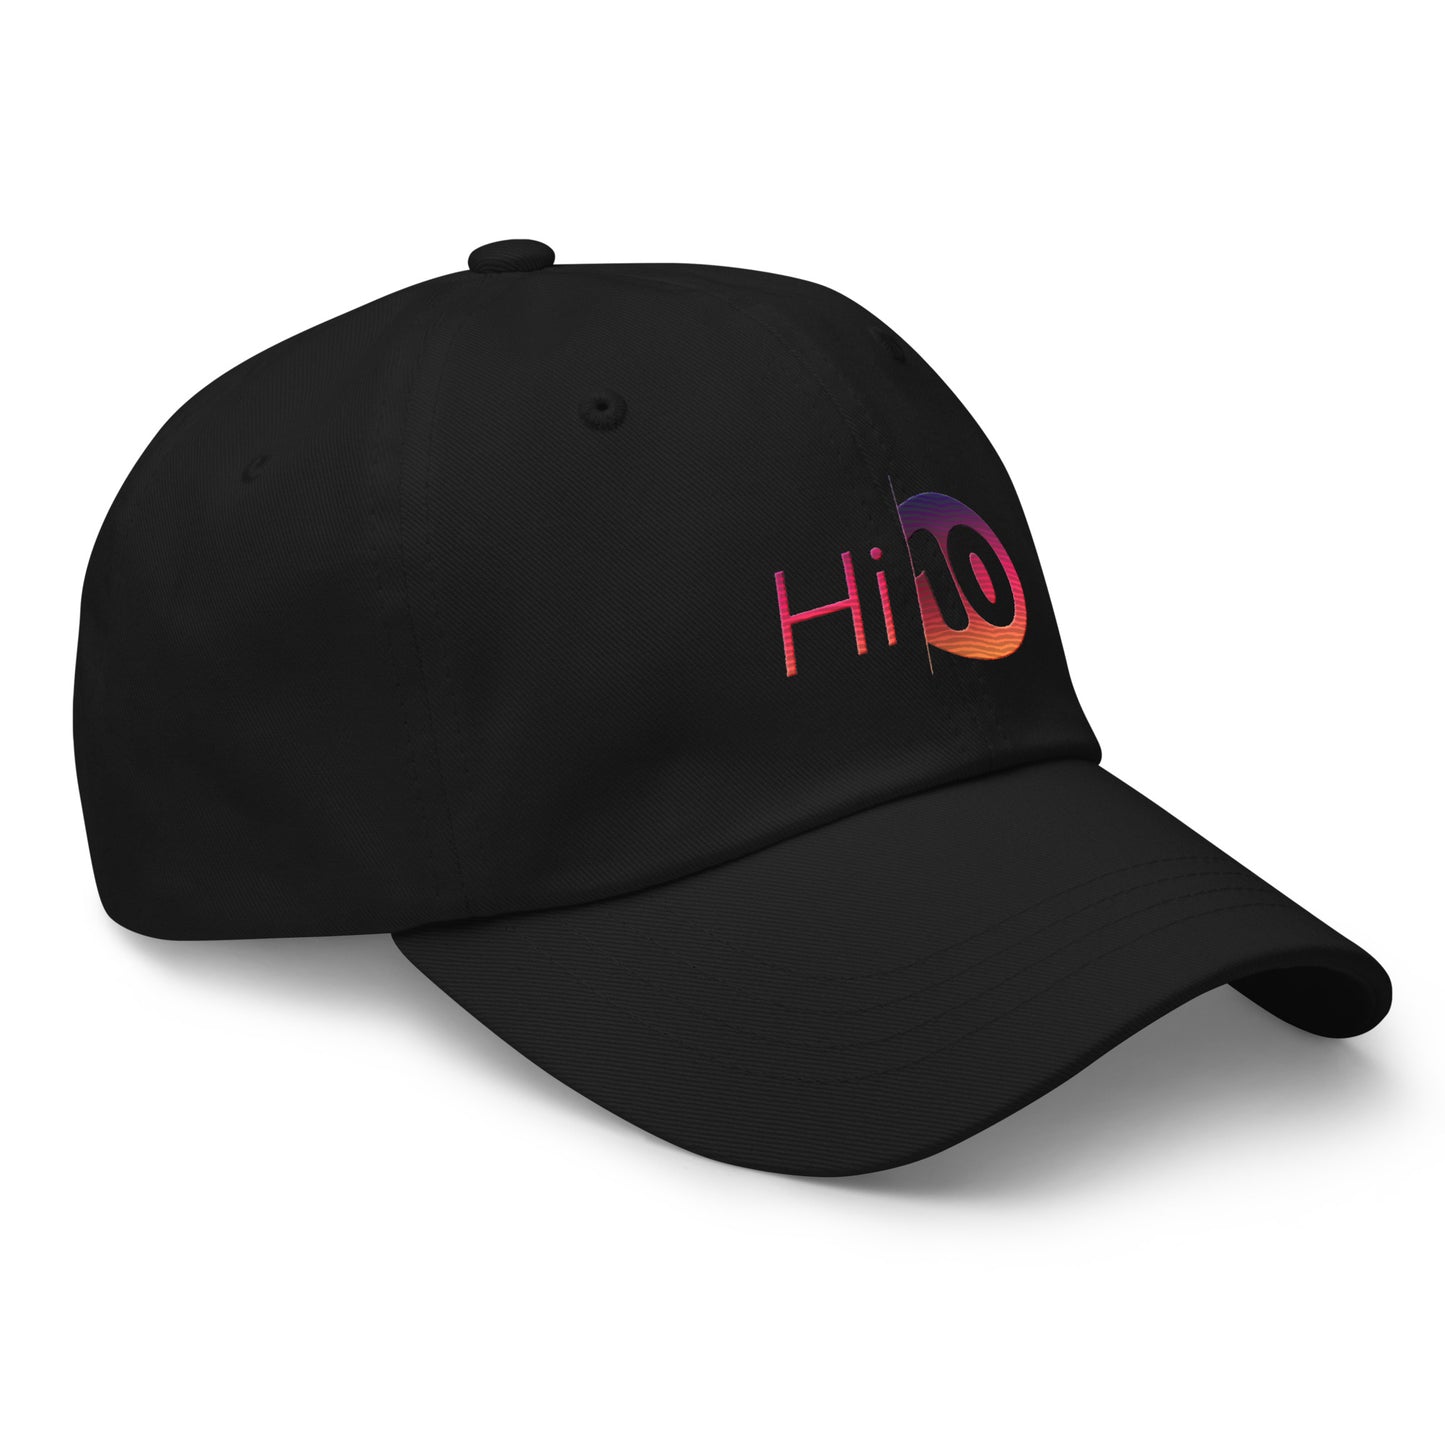 Hi10 Dad hat